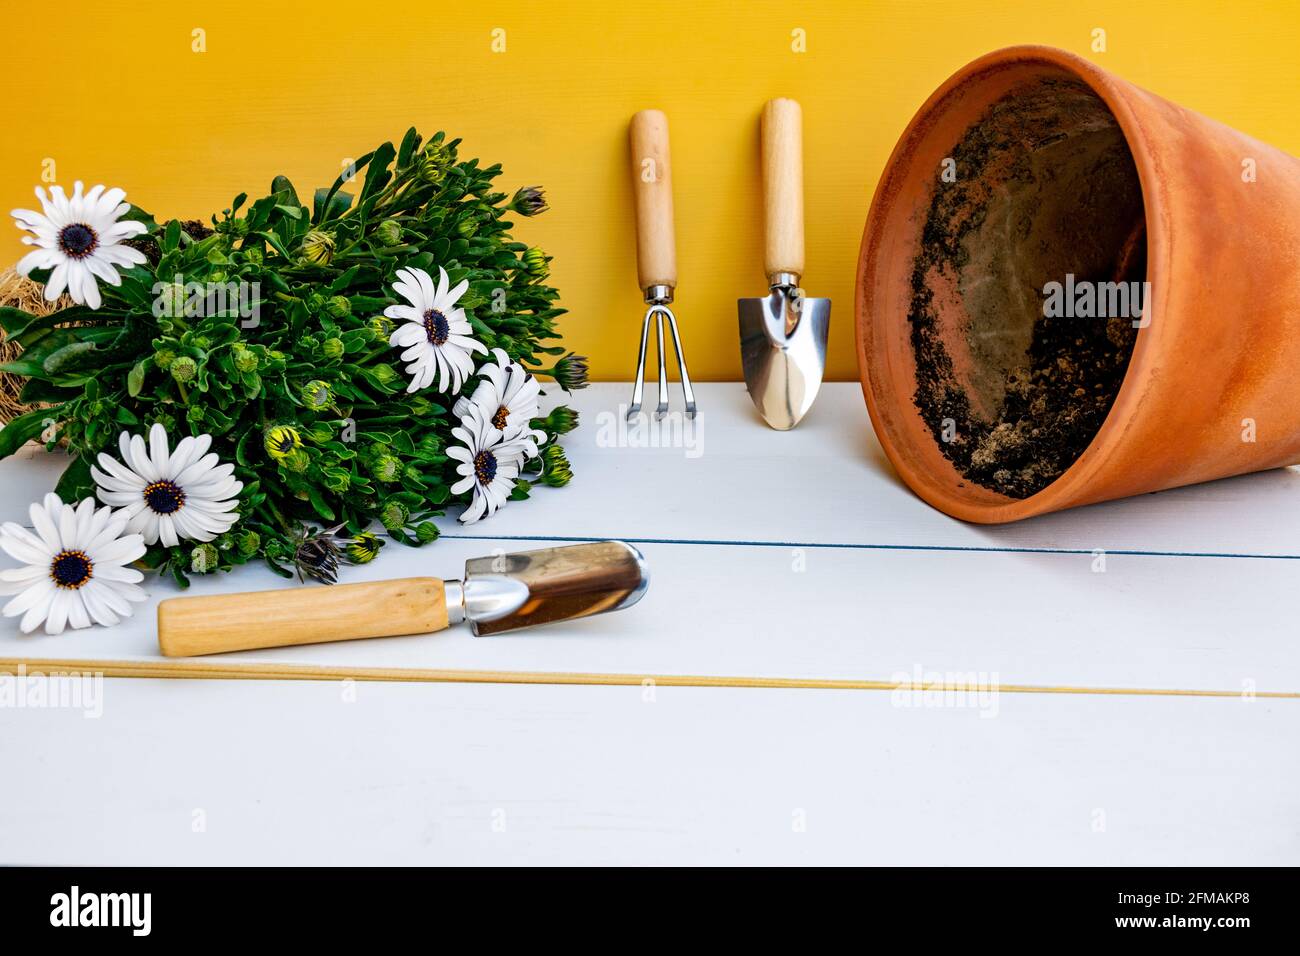 Attrezzi di giardinaggio appoggiati contro parete gialla e pentola e Daisy pianta su sfondo bianco di legno. Concetto di giardino primaverile. Foto Stock